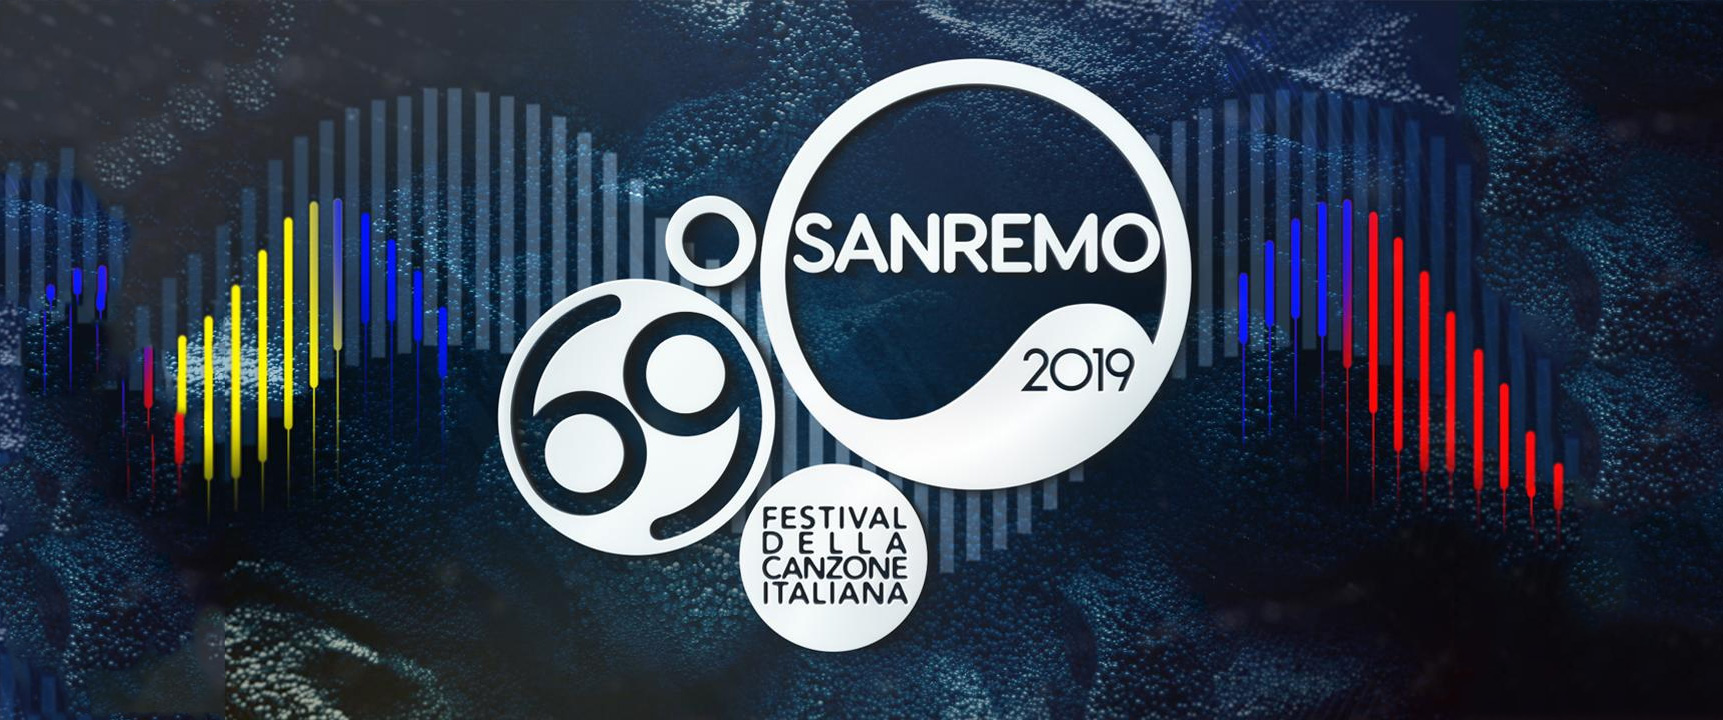 Sanremo 2019, Terza Serata: Anticipazioni, Programma, Ospiti